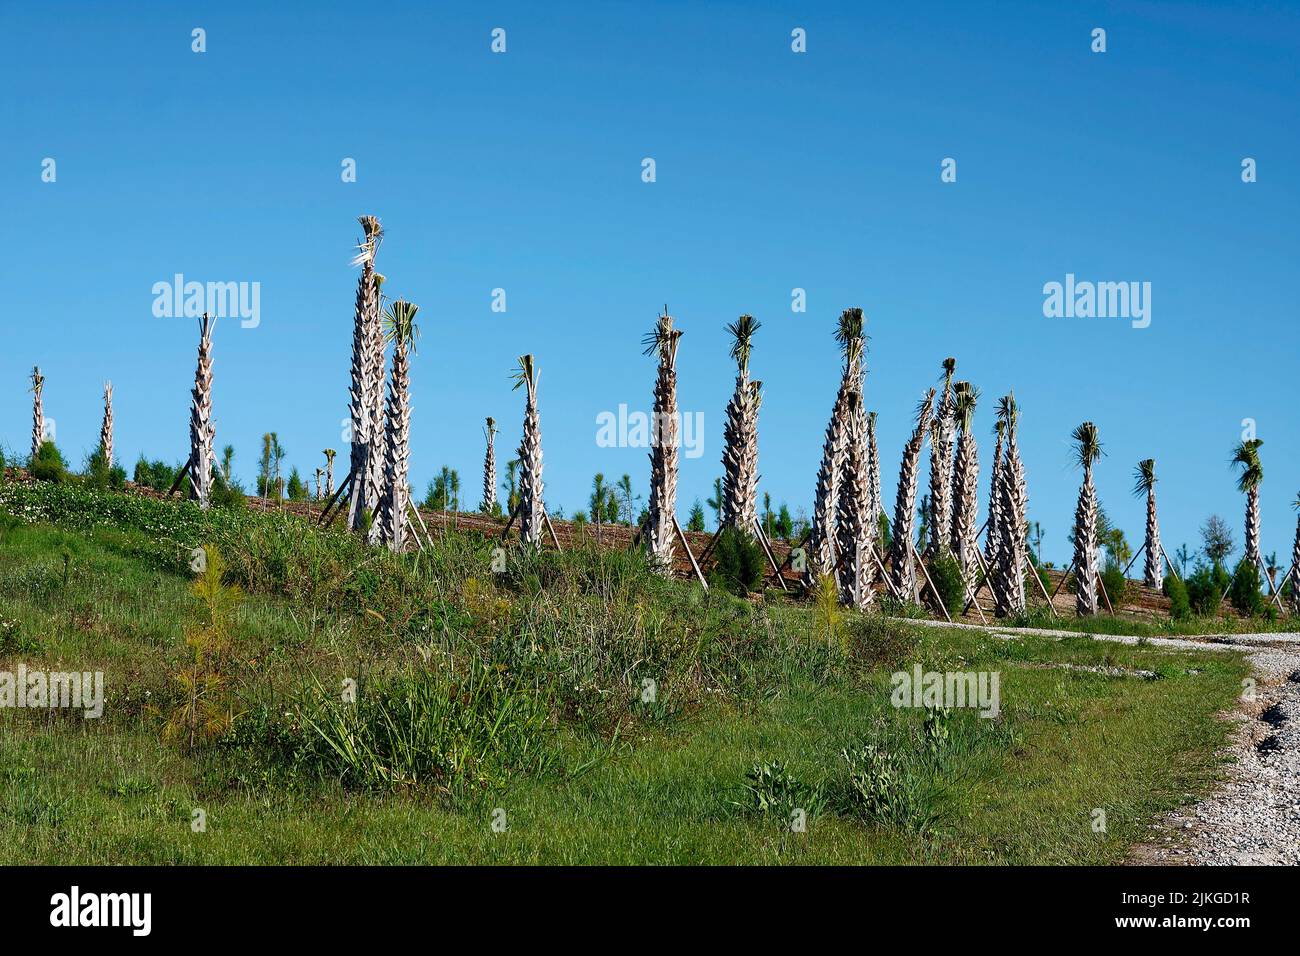 Beaucoup de palmiers nouvellement plantés, frondes coupées court, troncs soutenus avec des piquets de bois, proche ensemble, nature, FL, Floride Banque D'Images